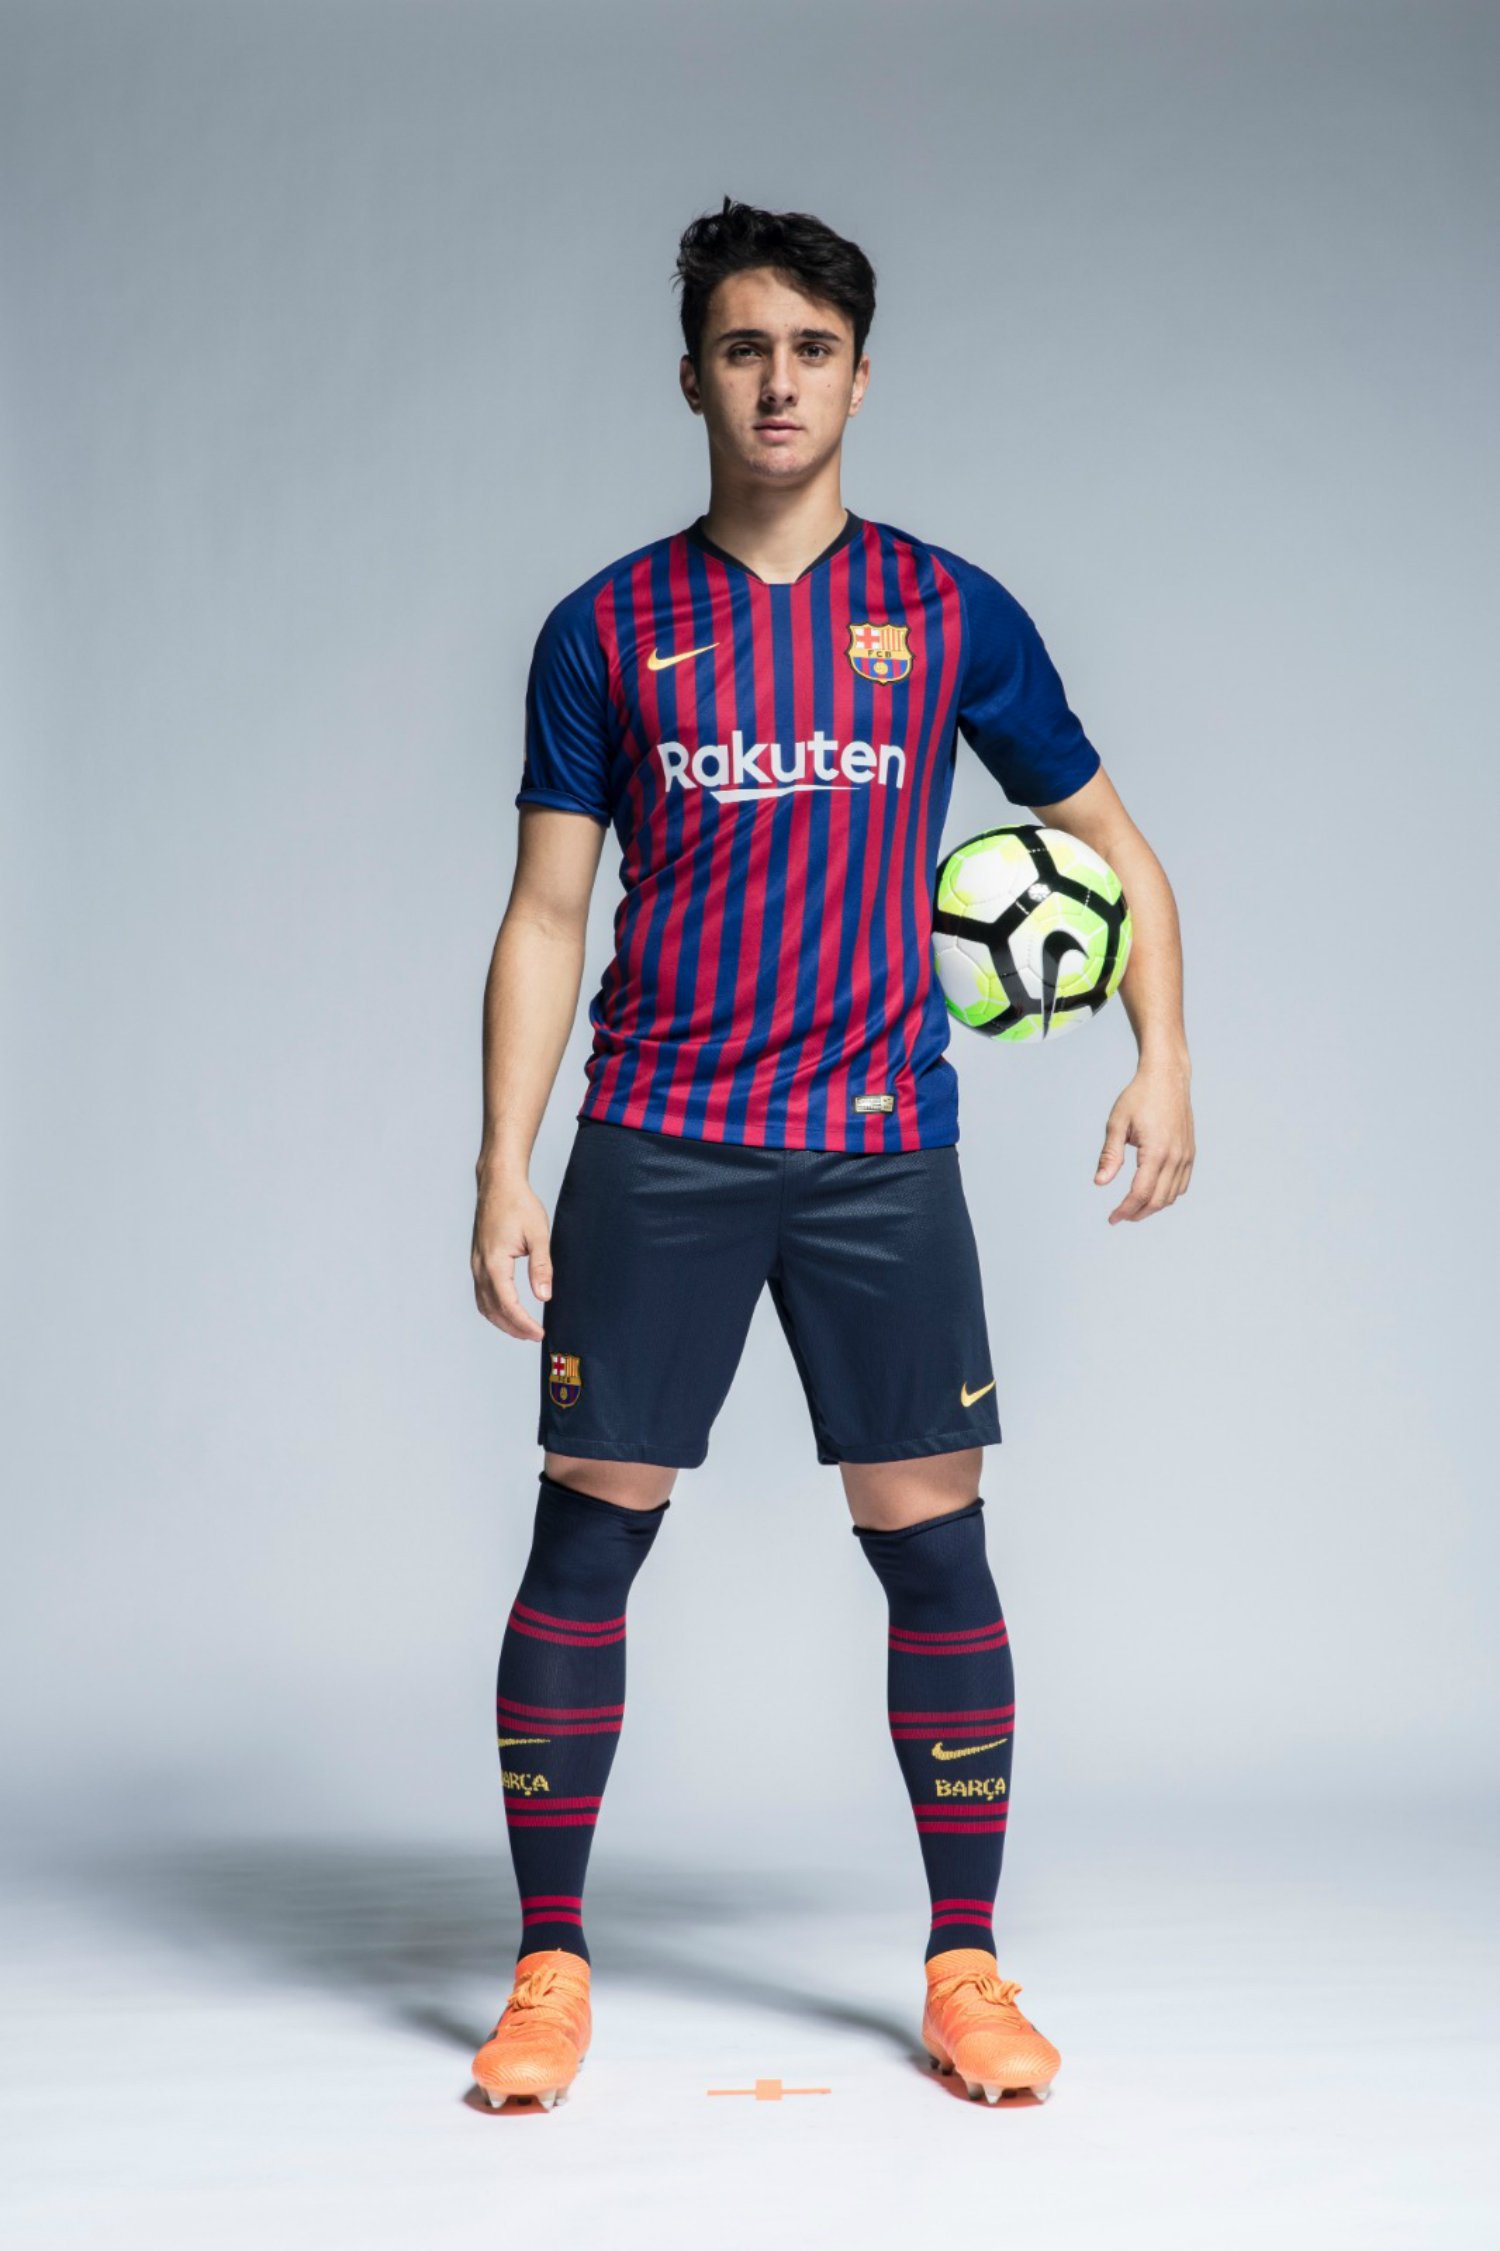 El somni d’Ignasi Vilarrasa, el nou fitxatge del Barça, per al 2019